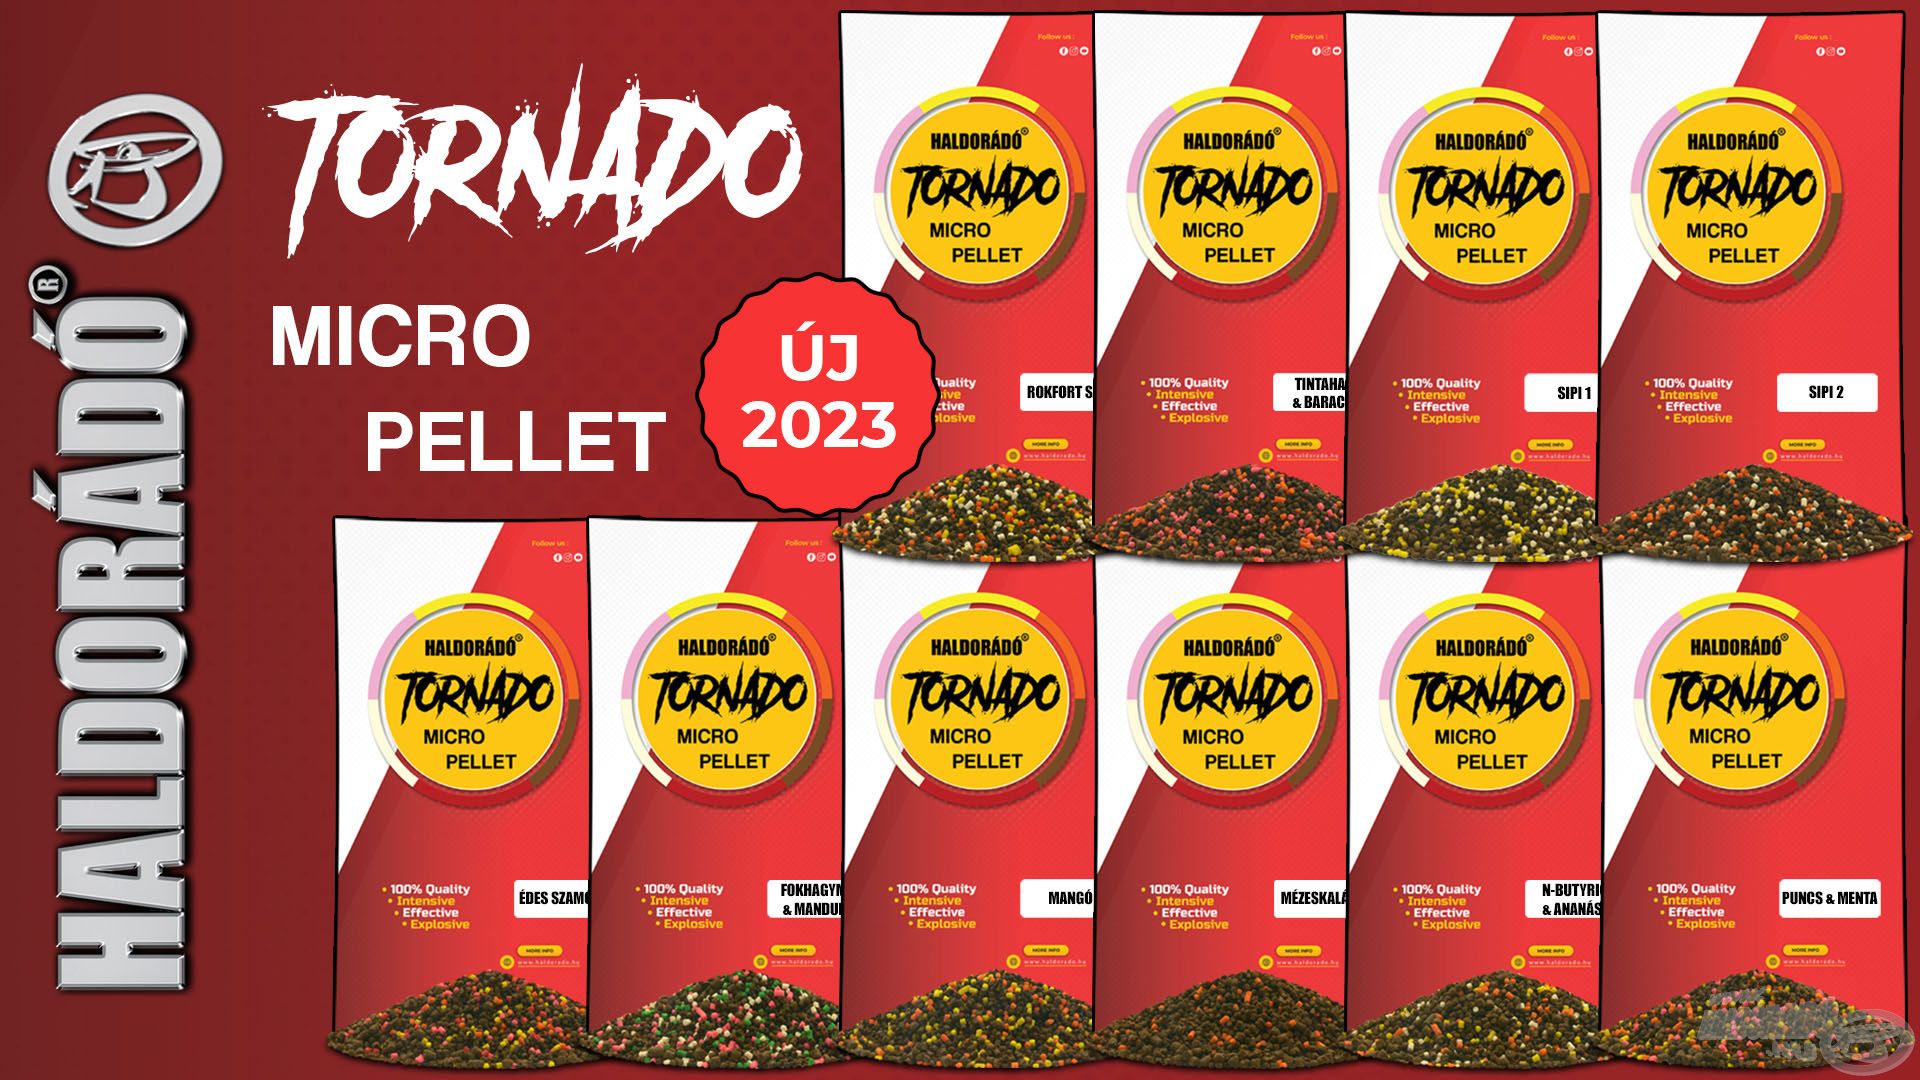 Az összes TORNADO ízben elérhető immár a micro pellet változat is